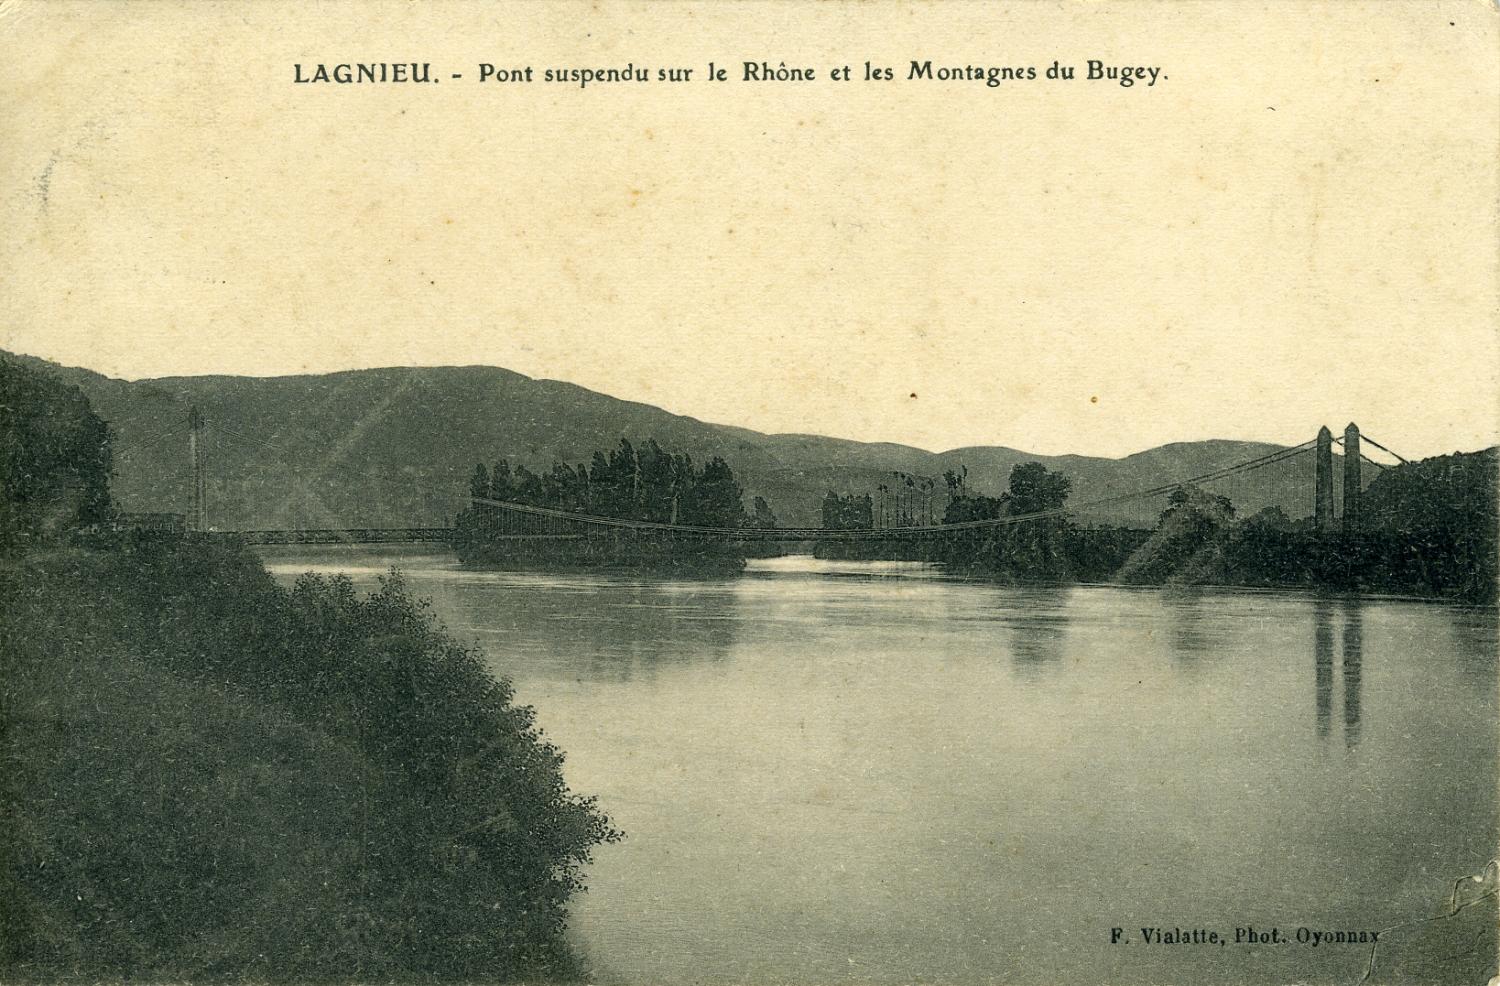 Lagnieu. - Pont suspendu sur le Rhône et les Montagnes du Bugey.